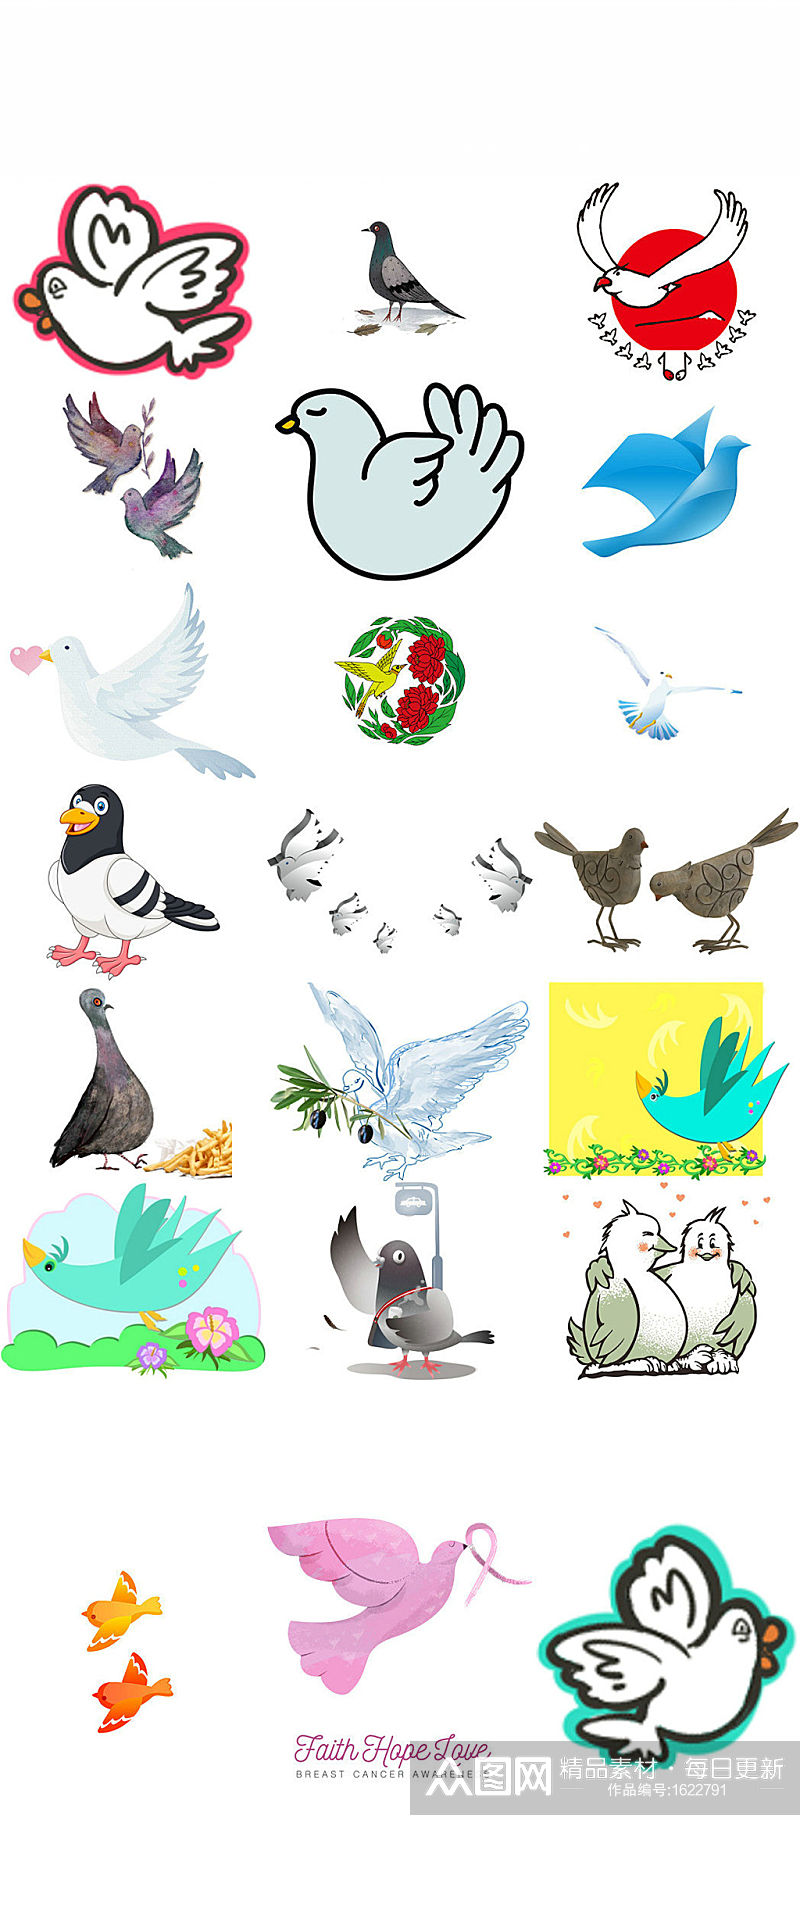 鸽子鸟类白鸽卡通素材素材